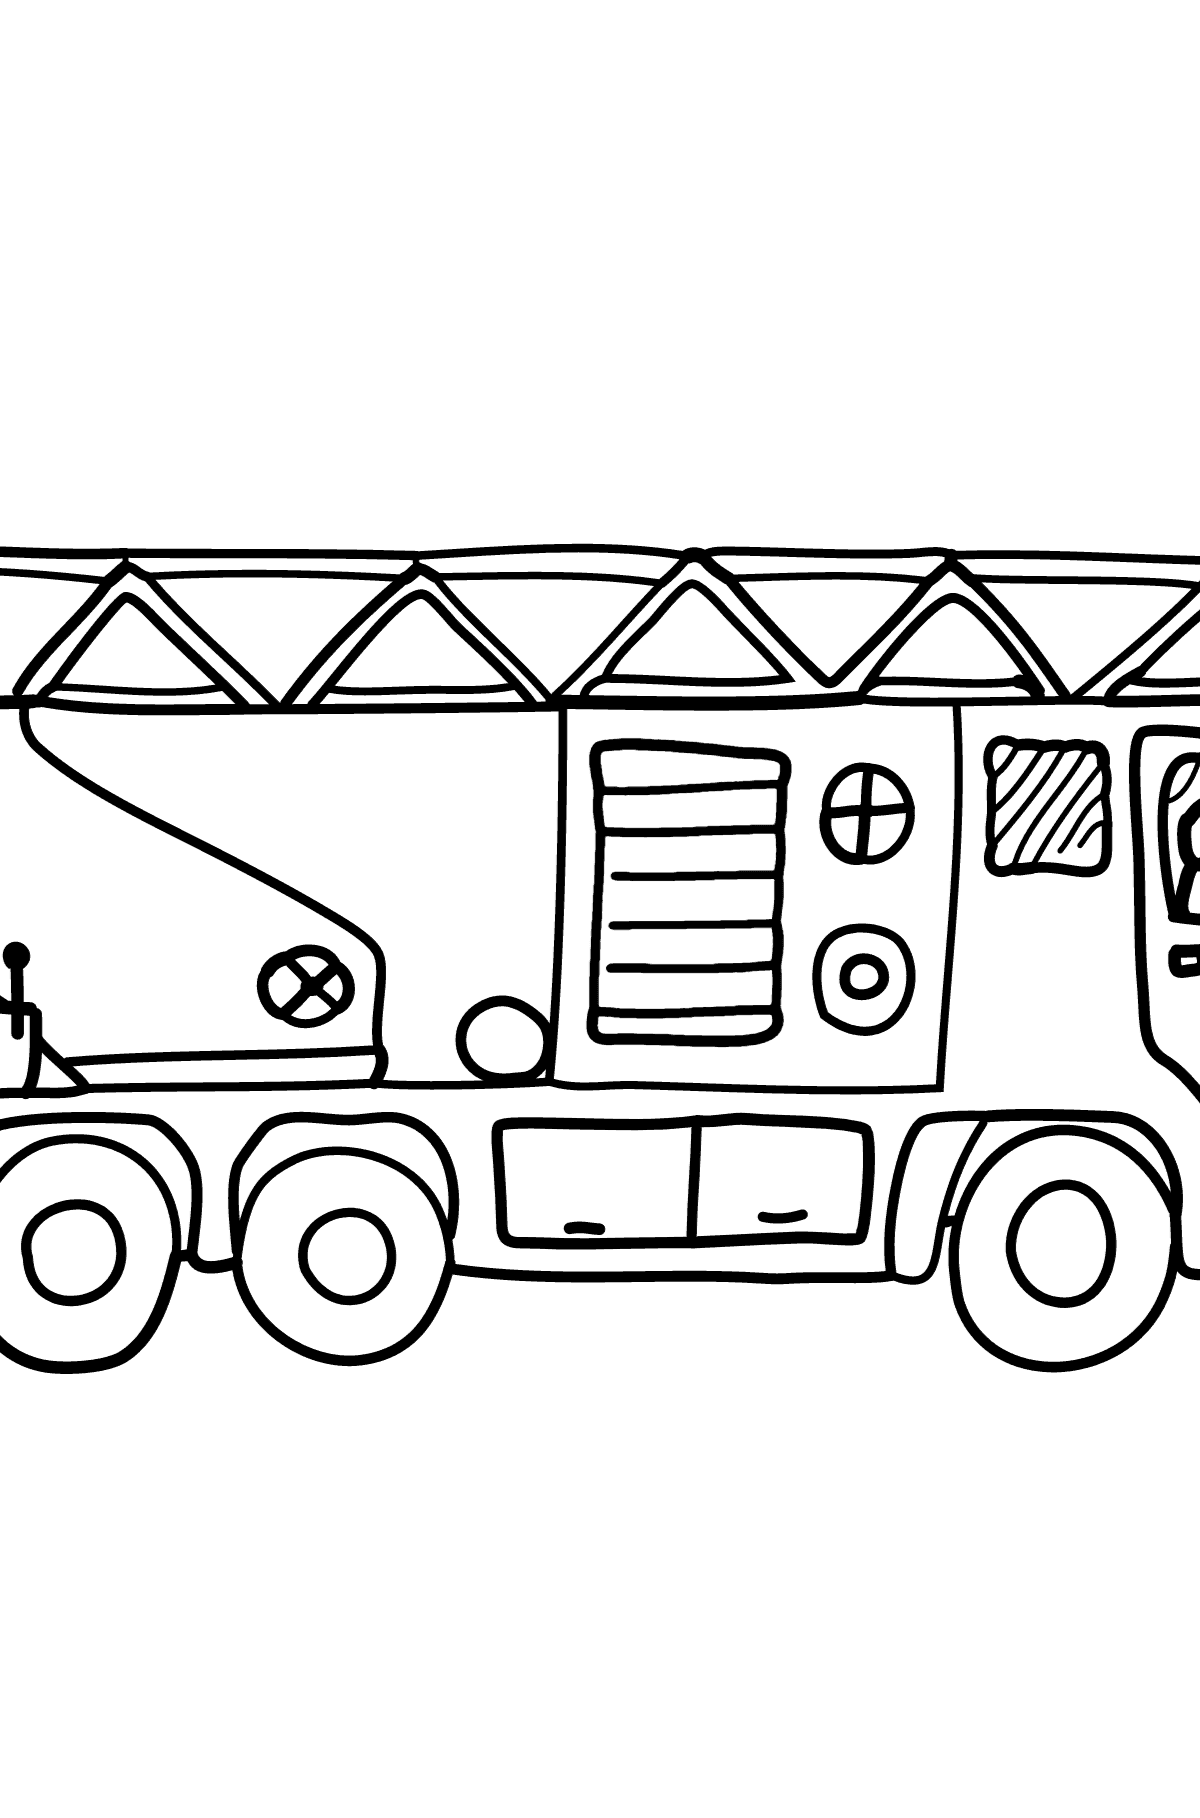 Disegni da colorare - Un camion dei pompieri - Disegni da colorare per bambini